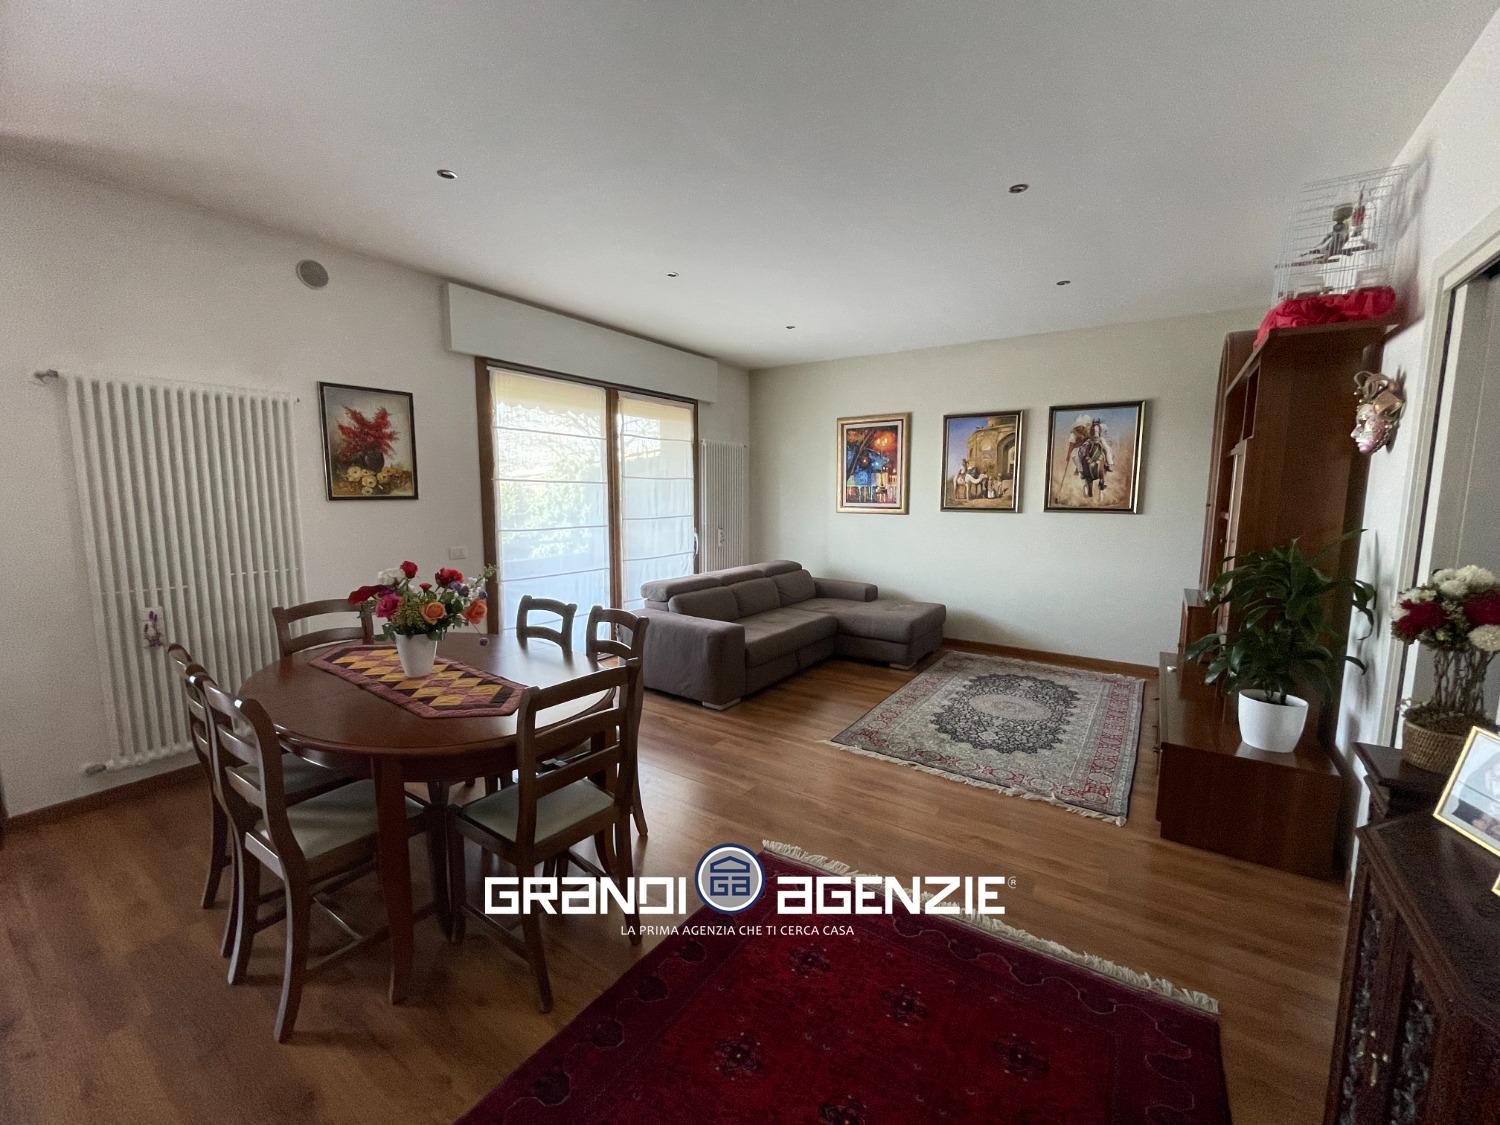 Appartamento in vendita a Roncade, 3 locali, prezzo € 149.000 | PortaleAgenzieImmobiliari.it